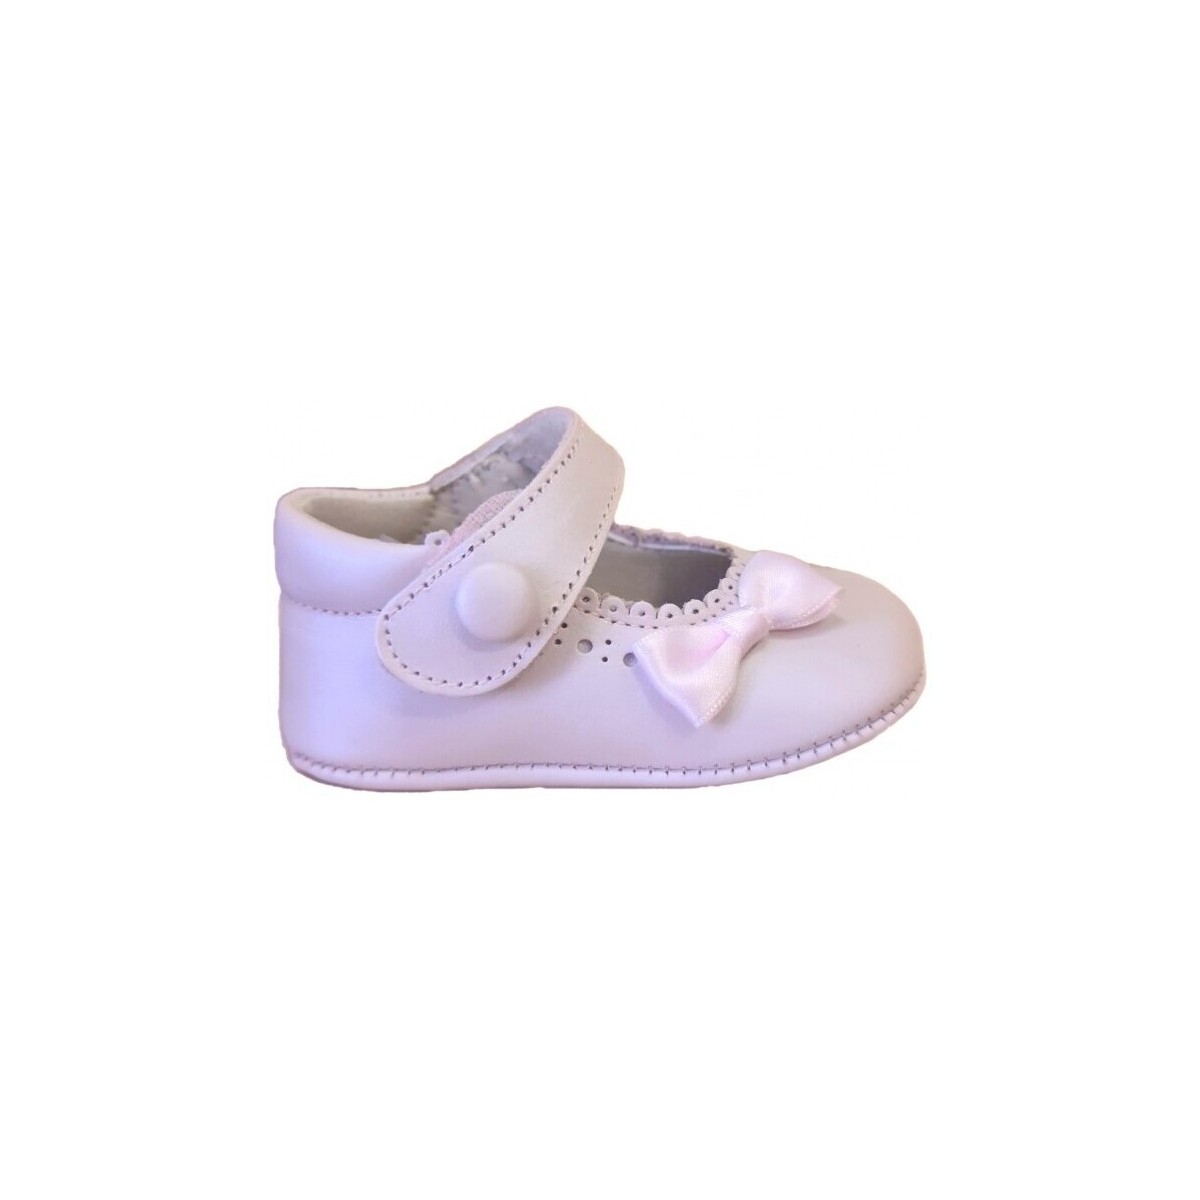 Chaussures Garçon Chaussons bébés Citos 26290-15 Rose